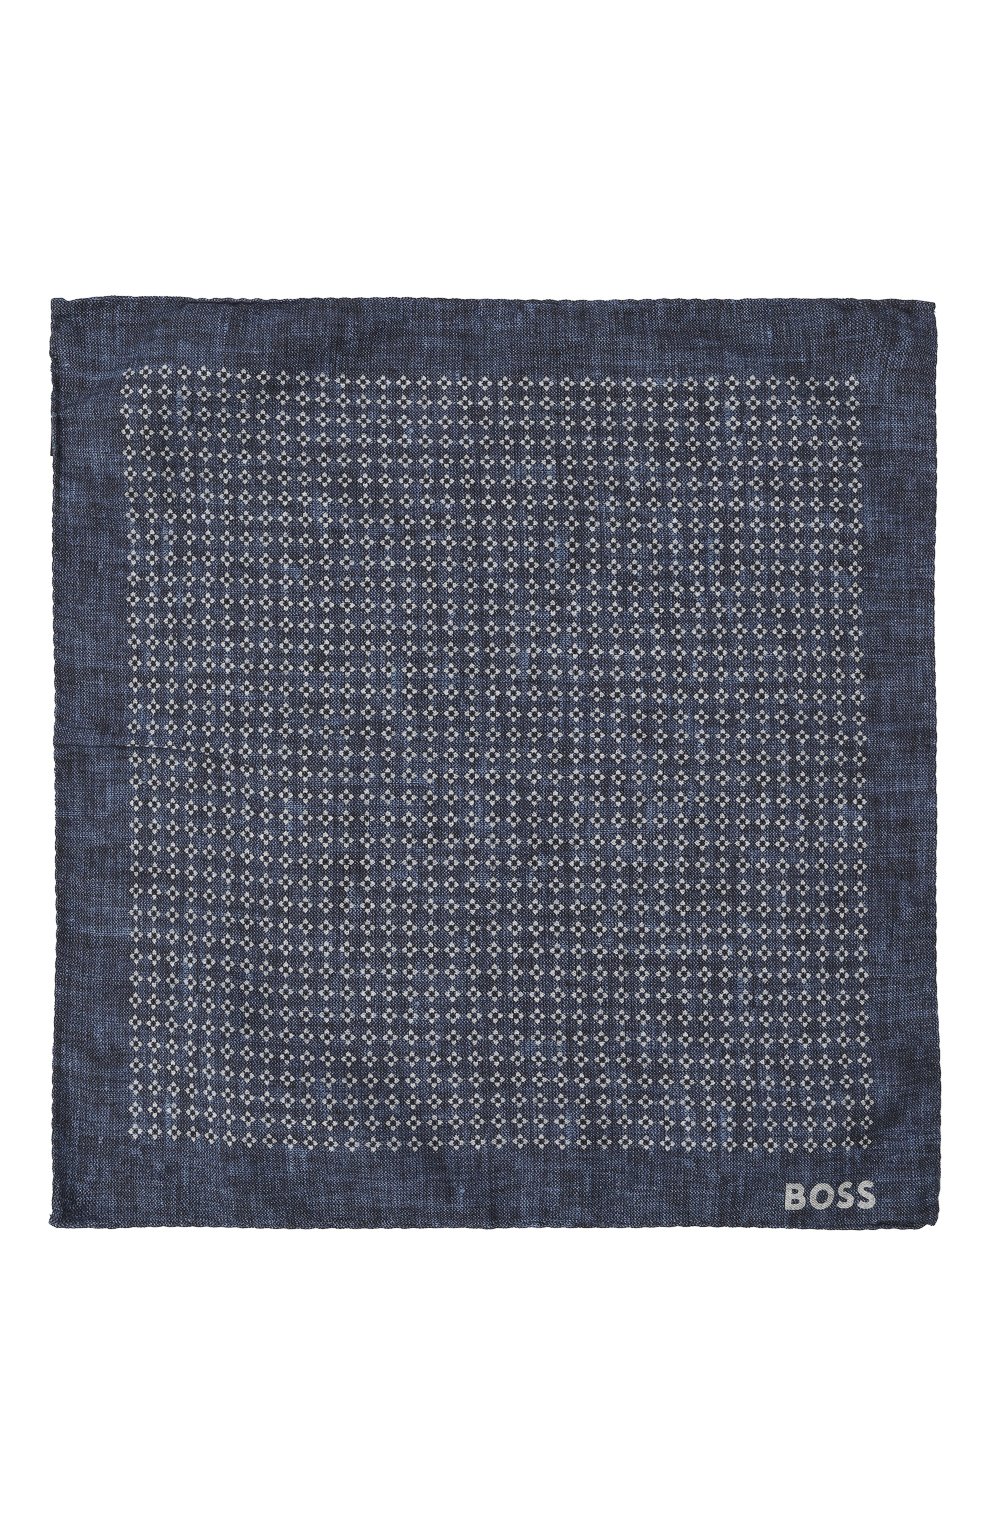 Мужской платок из хлопка и шерсти BOSS синего цвета, арт. 50499597 | Фото 3 (Материал: Текстиль, Шерсть, Хлопок)